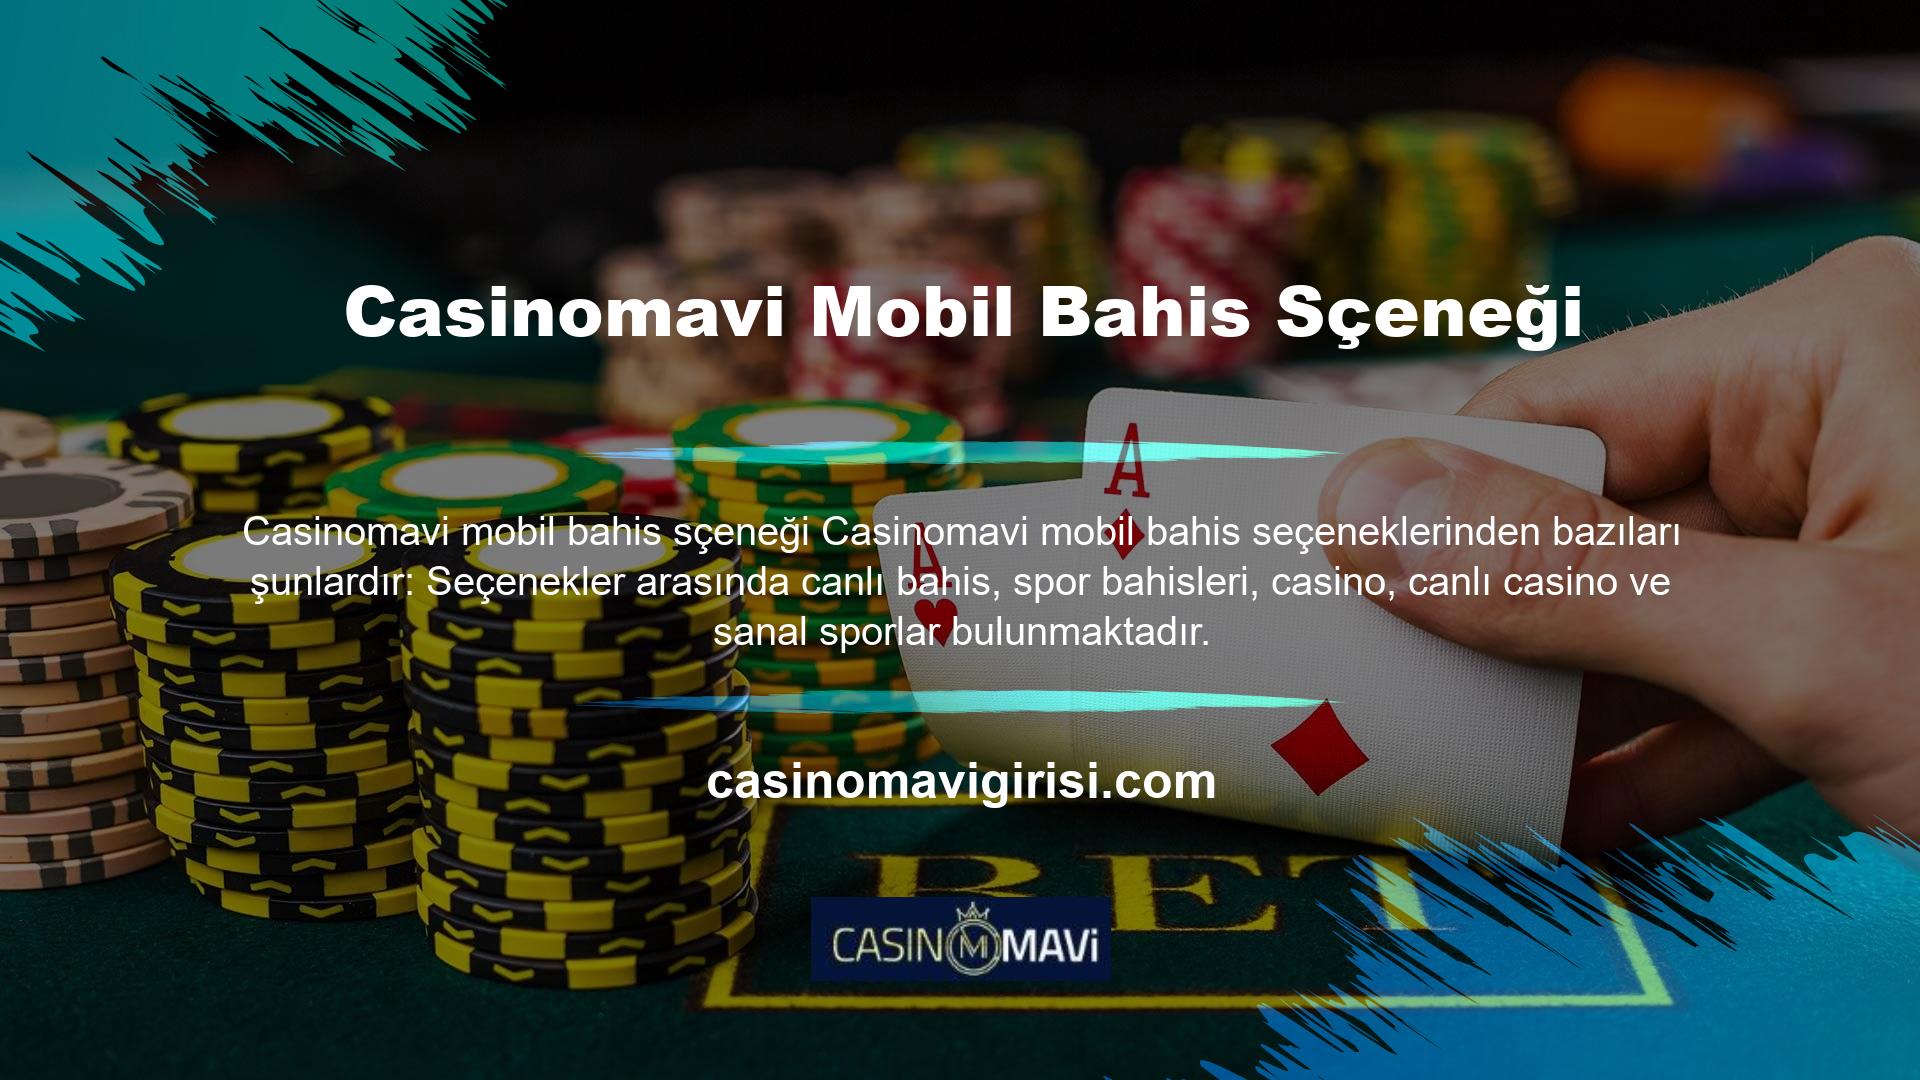 Casinomavi Bahis Seçenekleri mobil tasarımı, bireylerin uygulamayı indirdikten sonra yüksek oranlarla bahis oynamasına olanak tanıyor